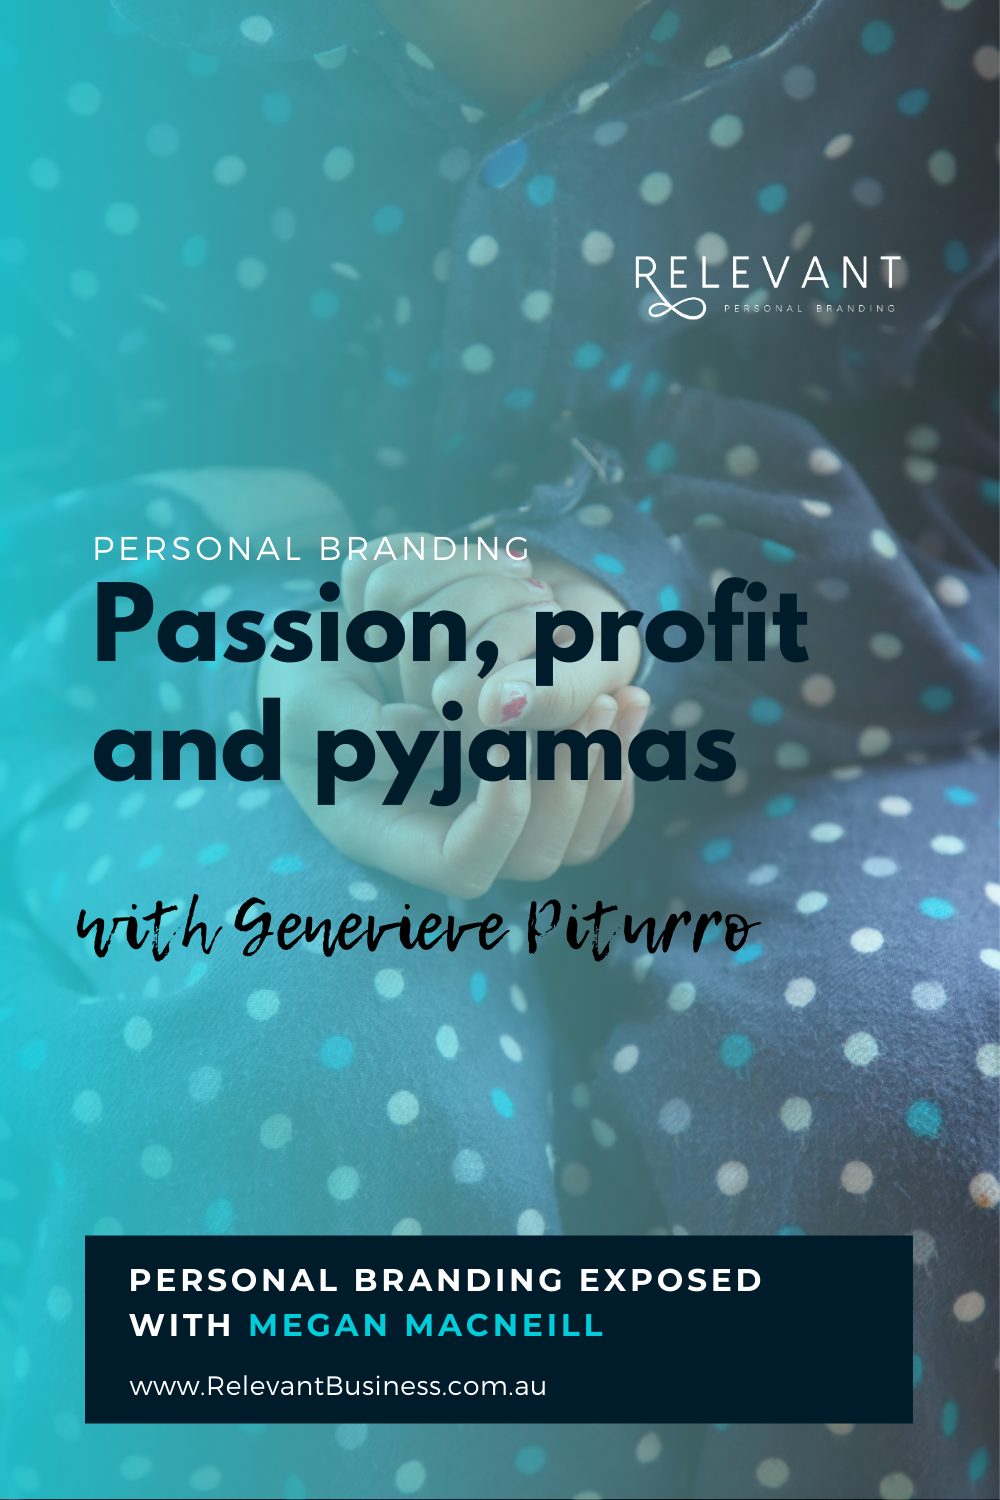 Passion, profit and pyjamas